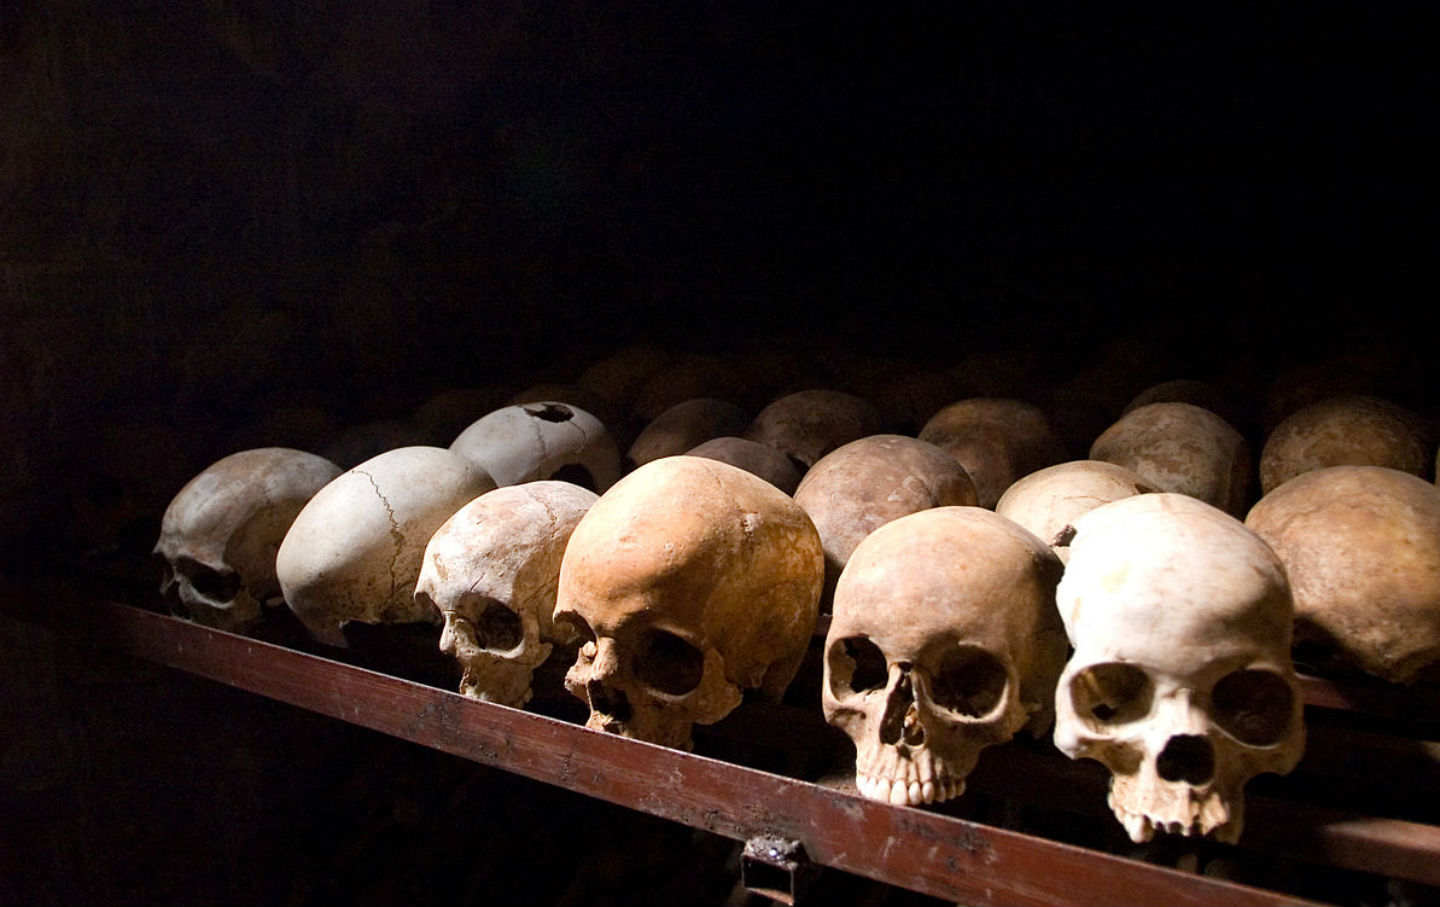 April 7, 1994: The Rwandan Genocide Begins